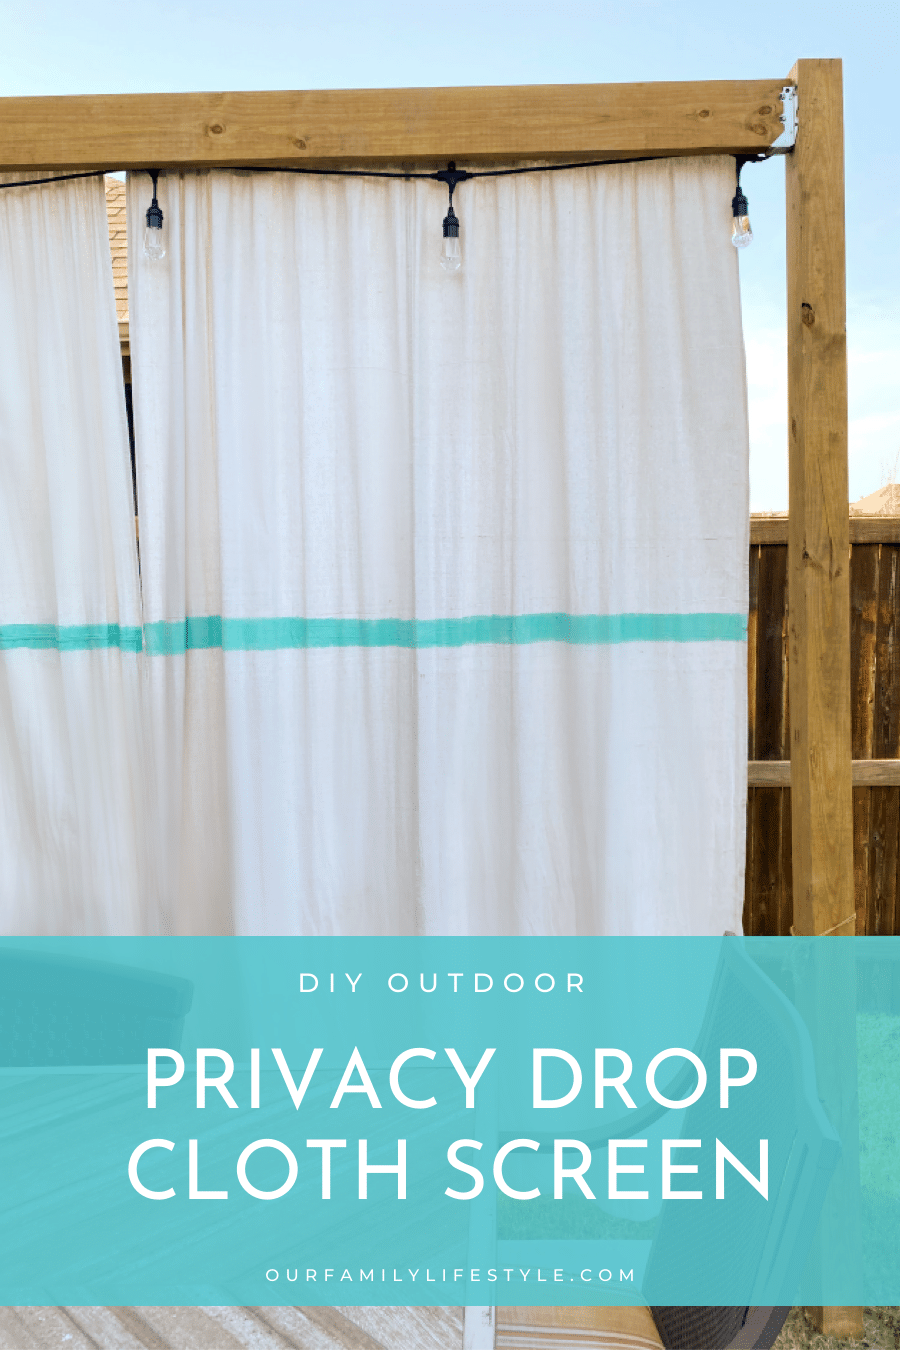 DIY Outdoor Privacy Drop Cloth Screen